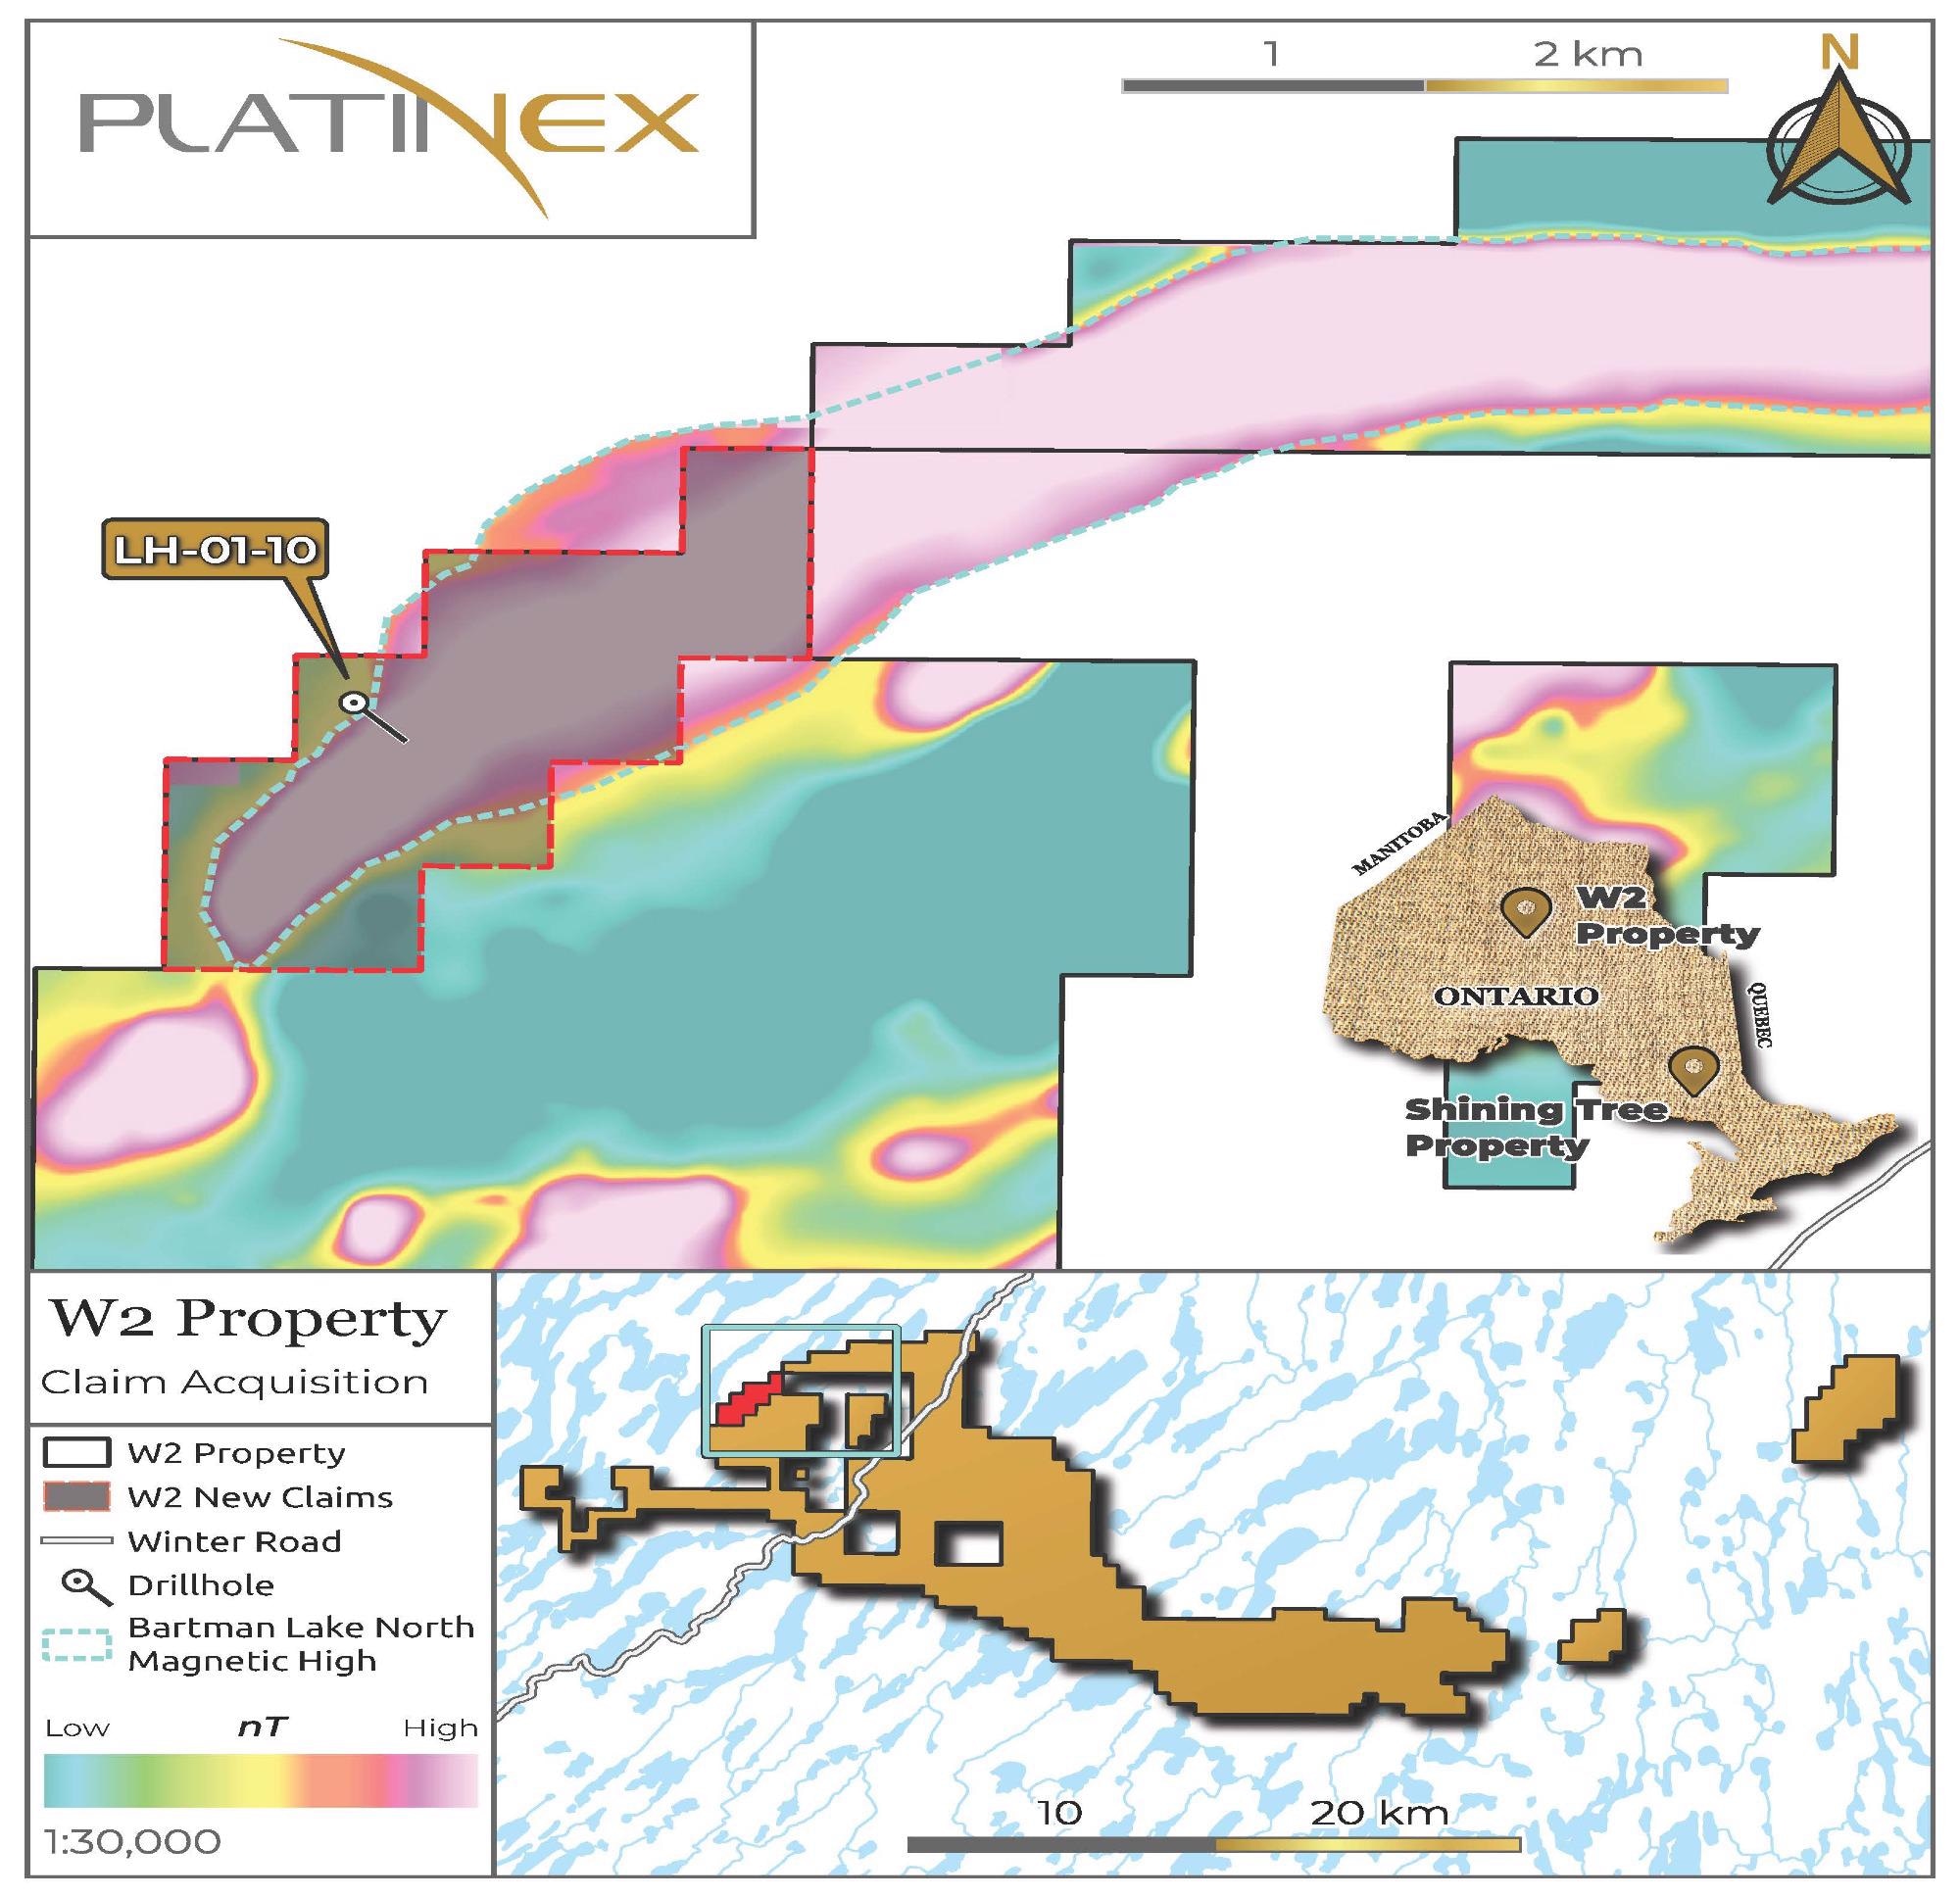 Platinex Declares Its Purchase of Titanium-Vanadium Claims Adjacent to W2 Copper-Nickel-PGE in Canada